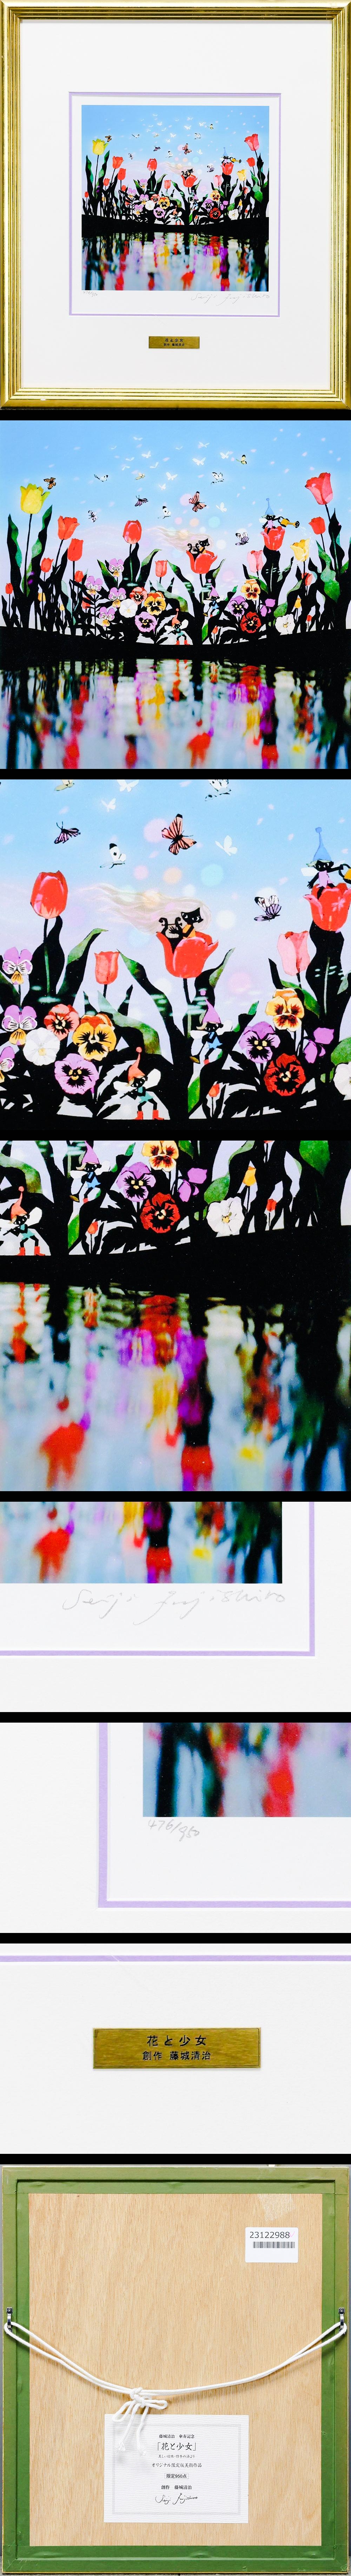 在庫処分藤城清治 「花と少女」 直筆サイン 美しい日本 四季の詩 春 レフグラフ 傘寿記念 限定950点 718/950 PIC-5 その他